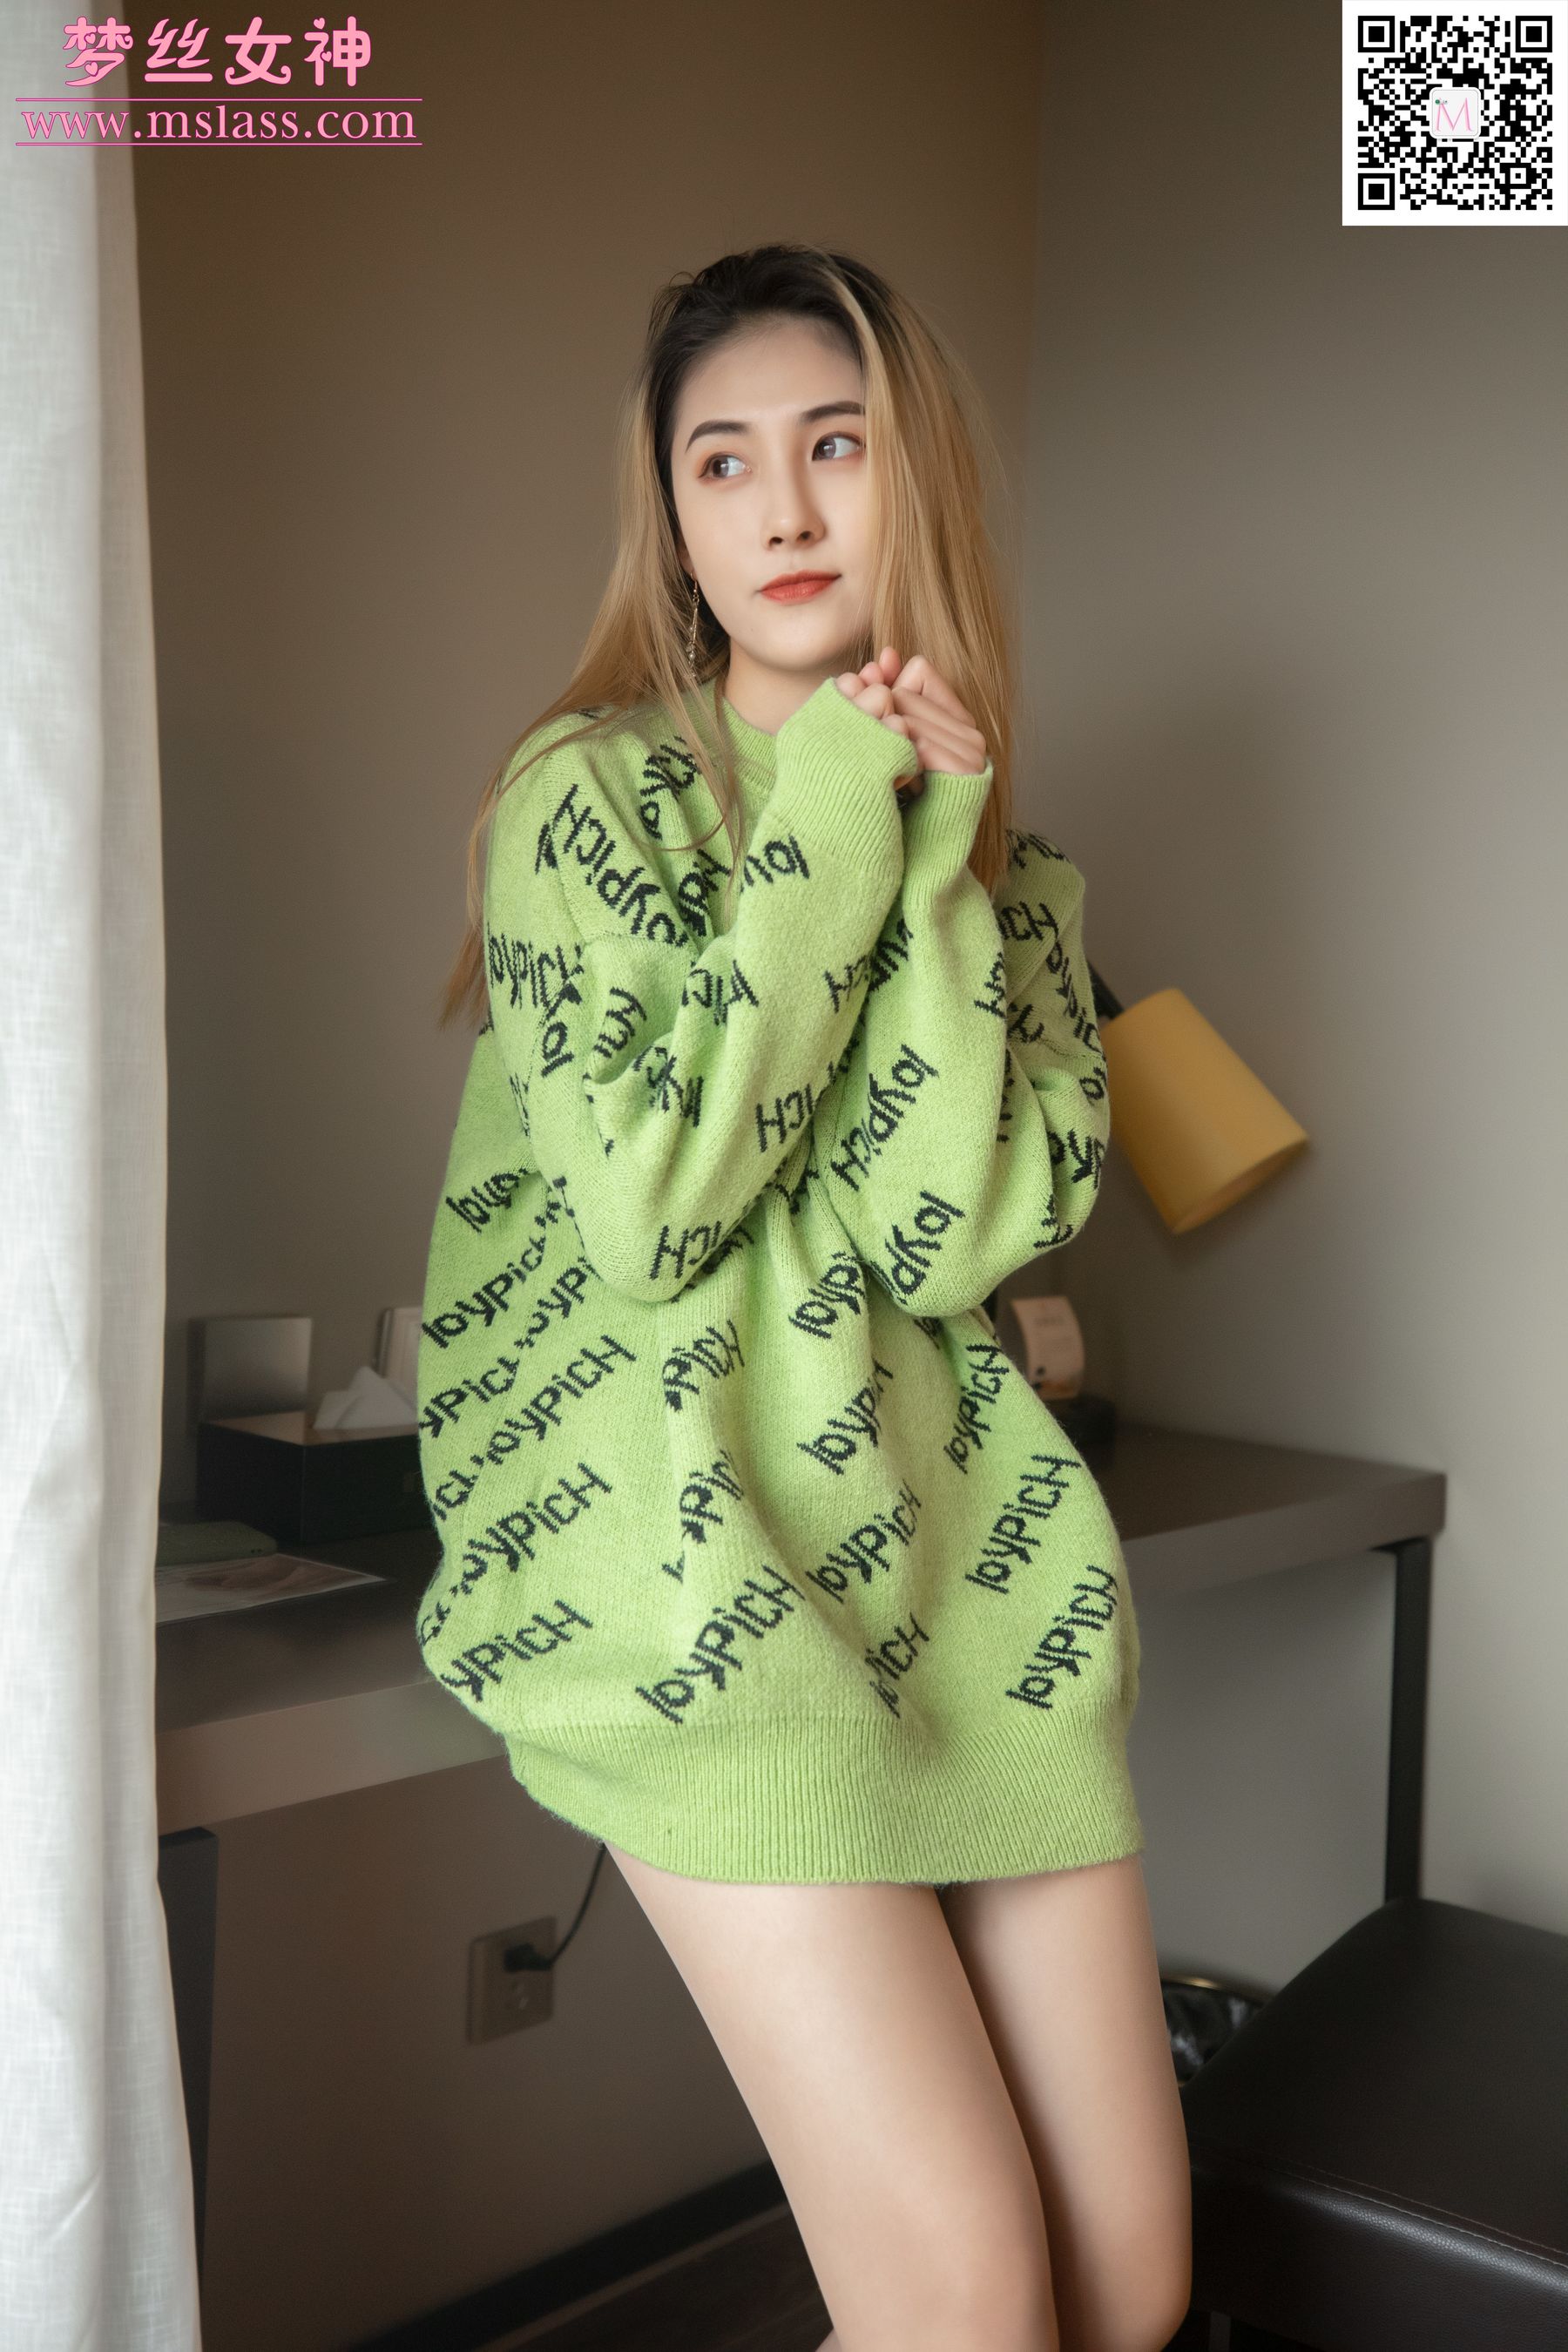 [梦丝女神MSLASS]  小允儿 喜欢绿绿的衣服/(64P)